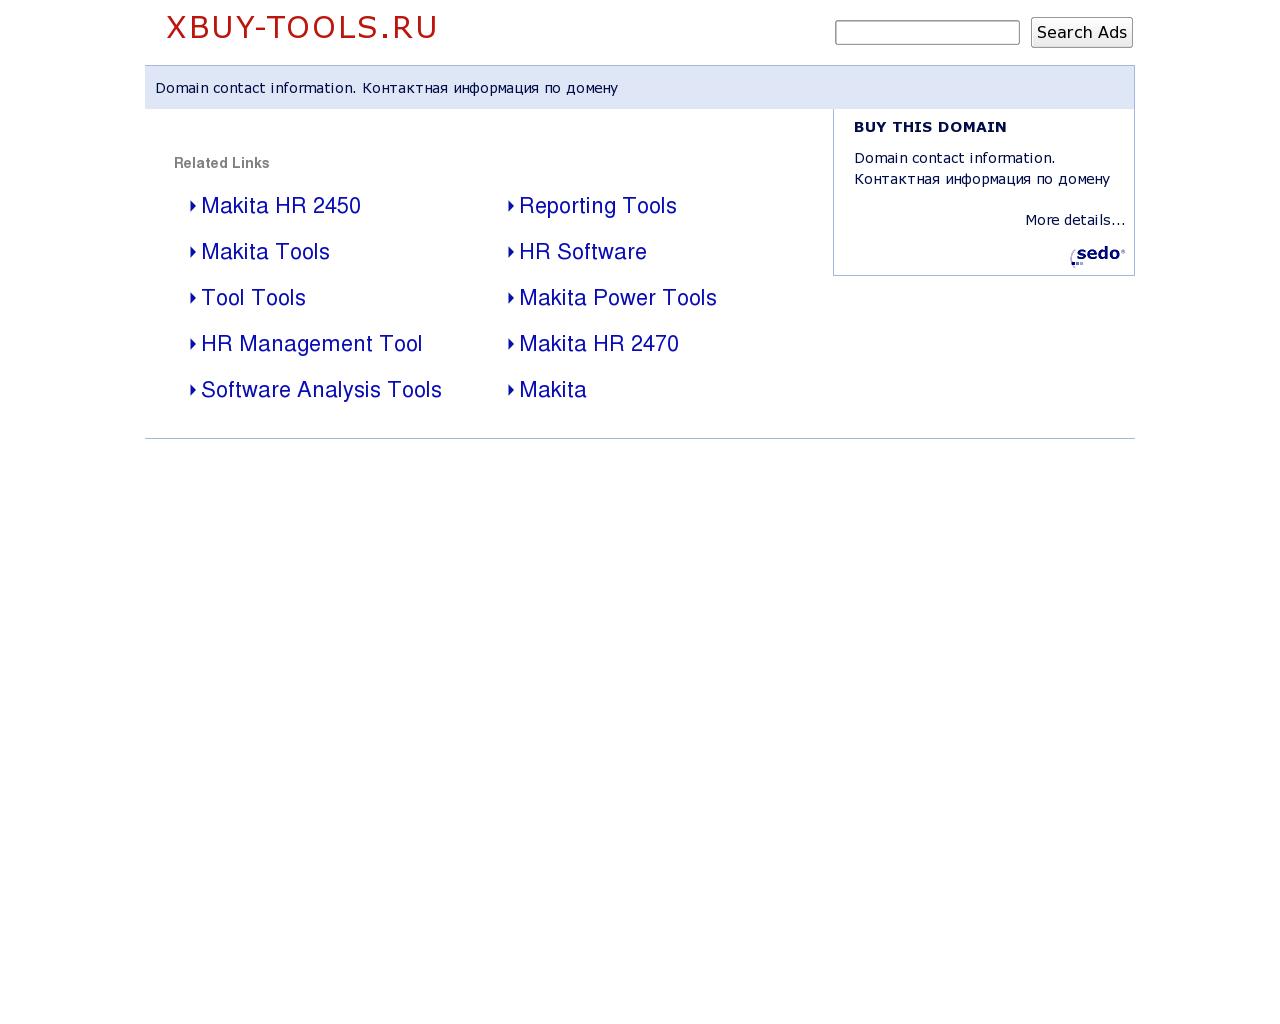 Изображение сайта xbuy-tools.ru в разрешении 1280x1024